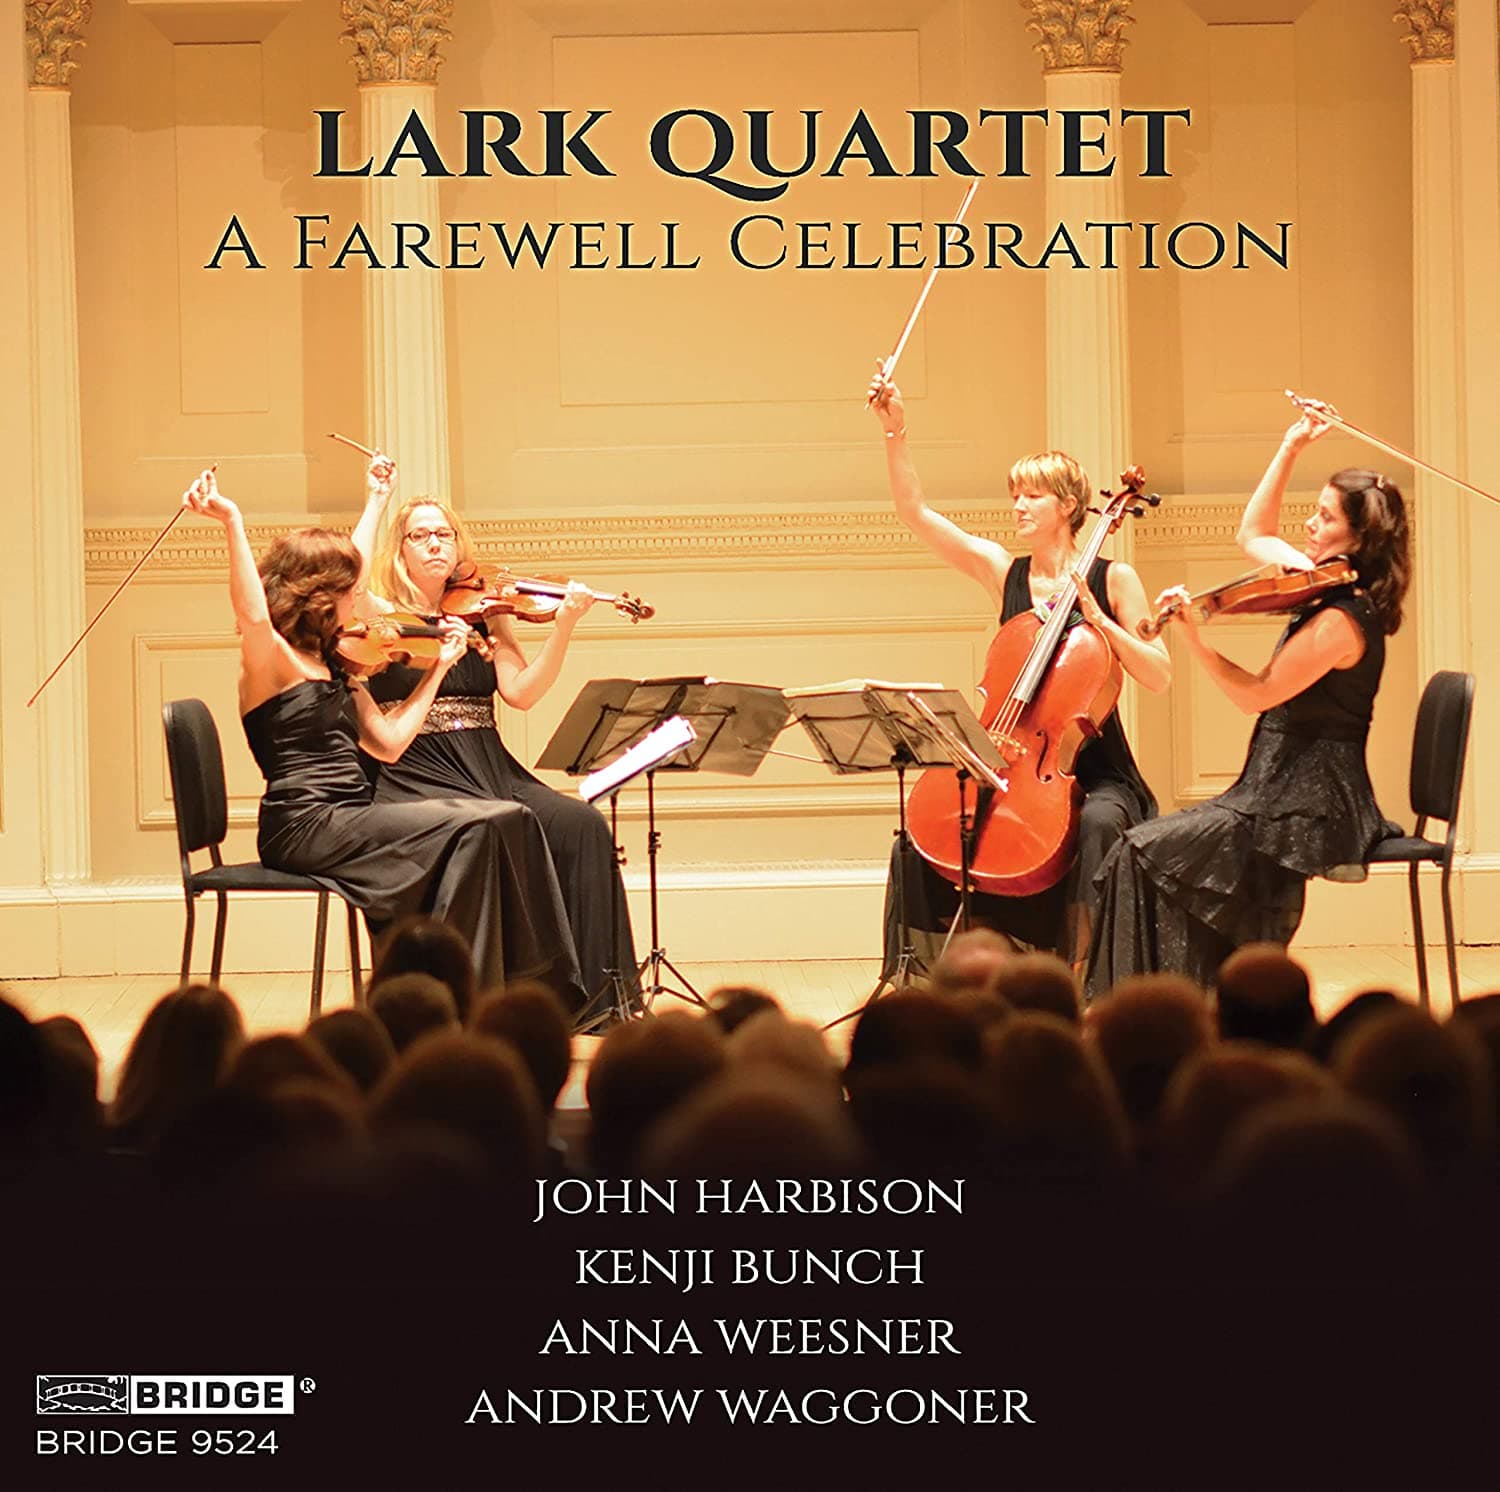 Covert art for Lark Quartet Farewell Celebration album